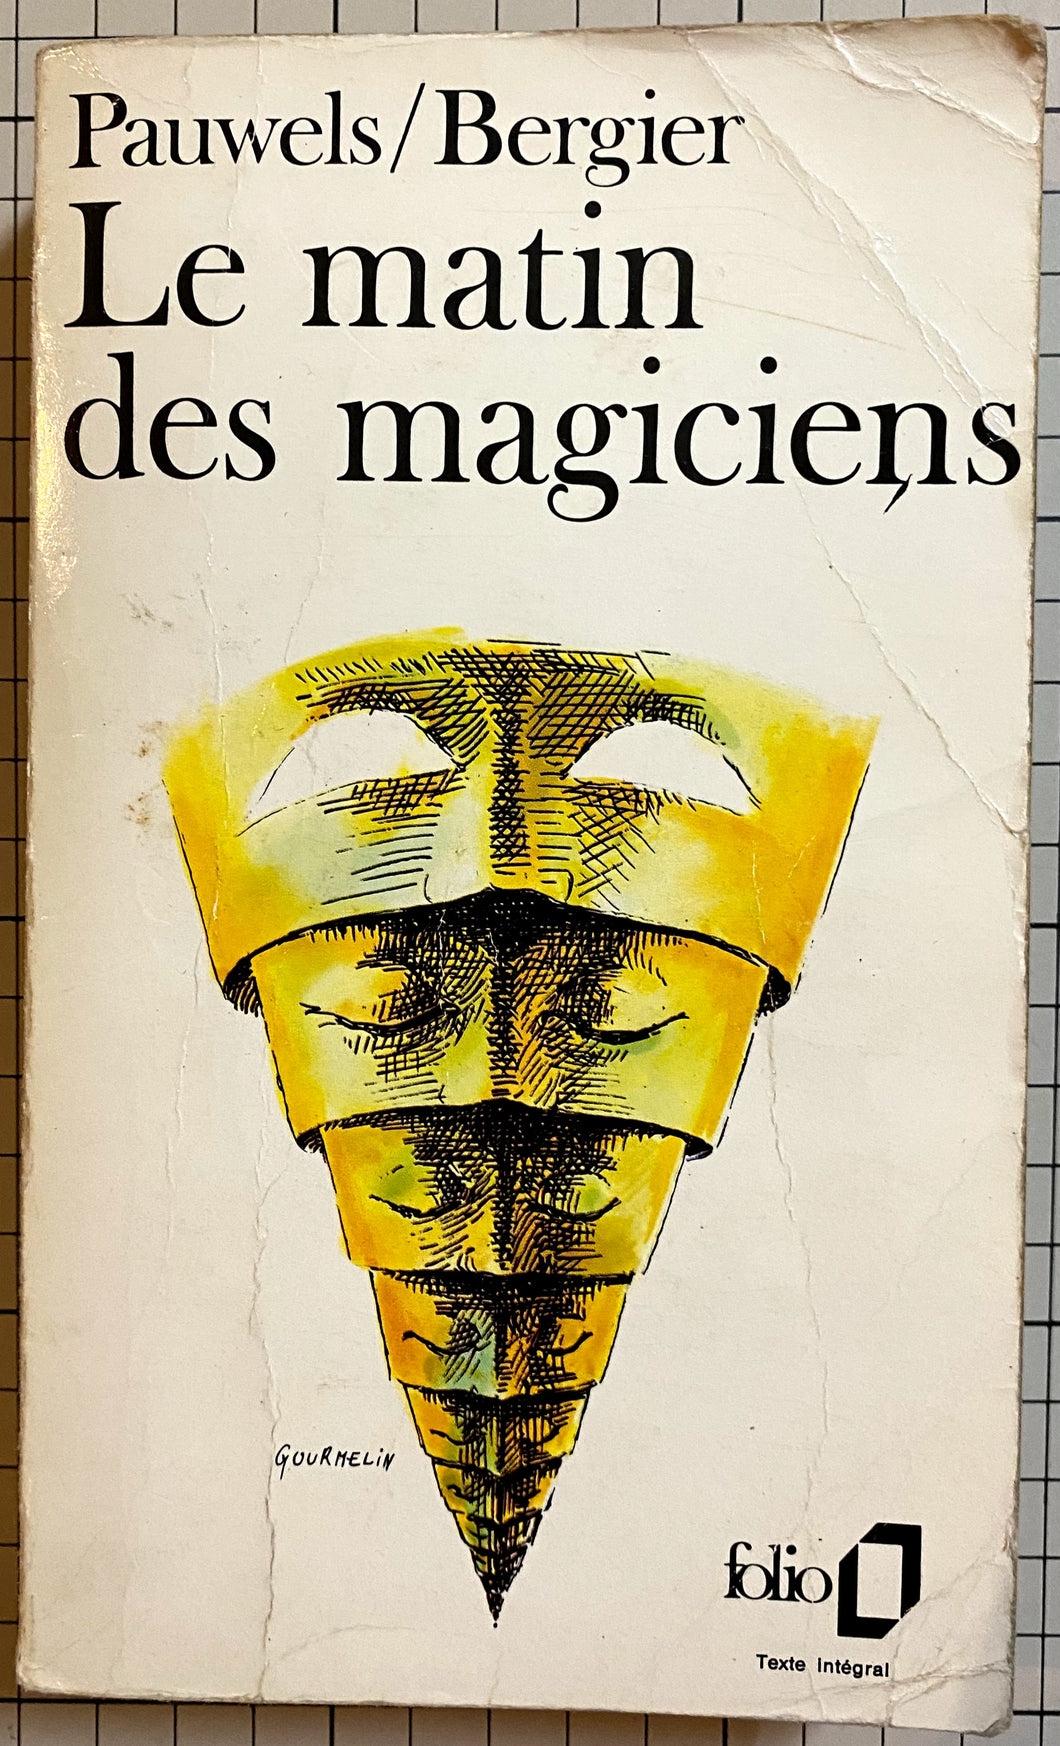 Matin Des Magiciens, Le : Jacques Bergier, Louis Pauwels